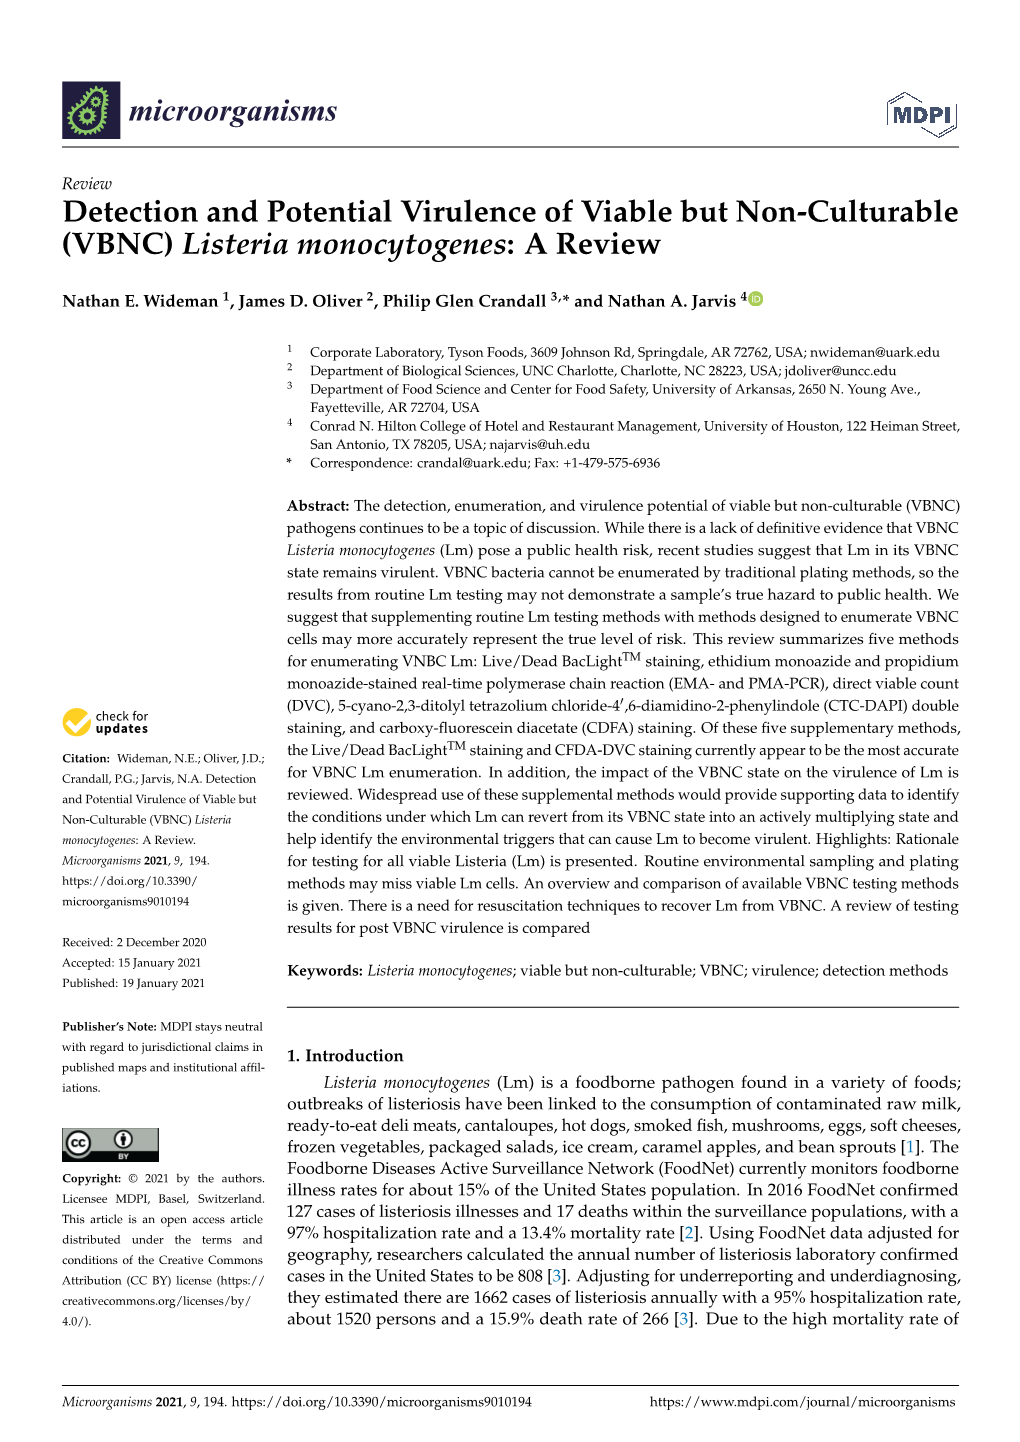 VBNC) Listeria Monocytogenes: a Review